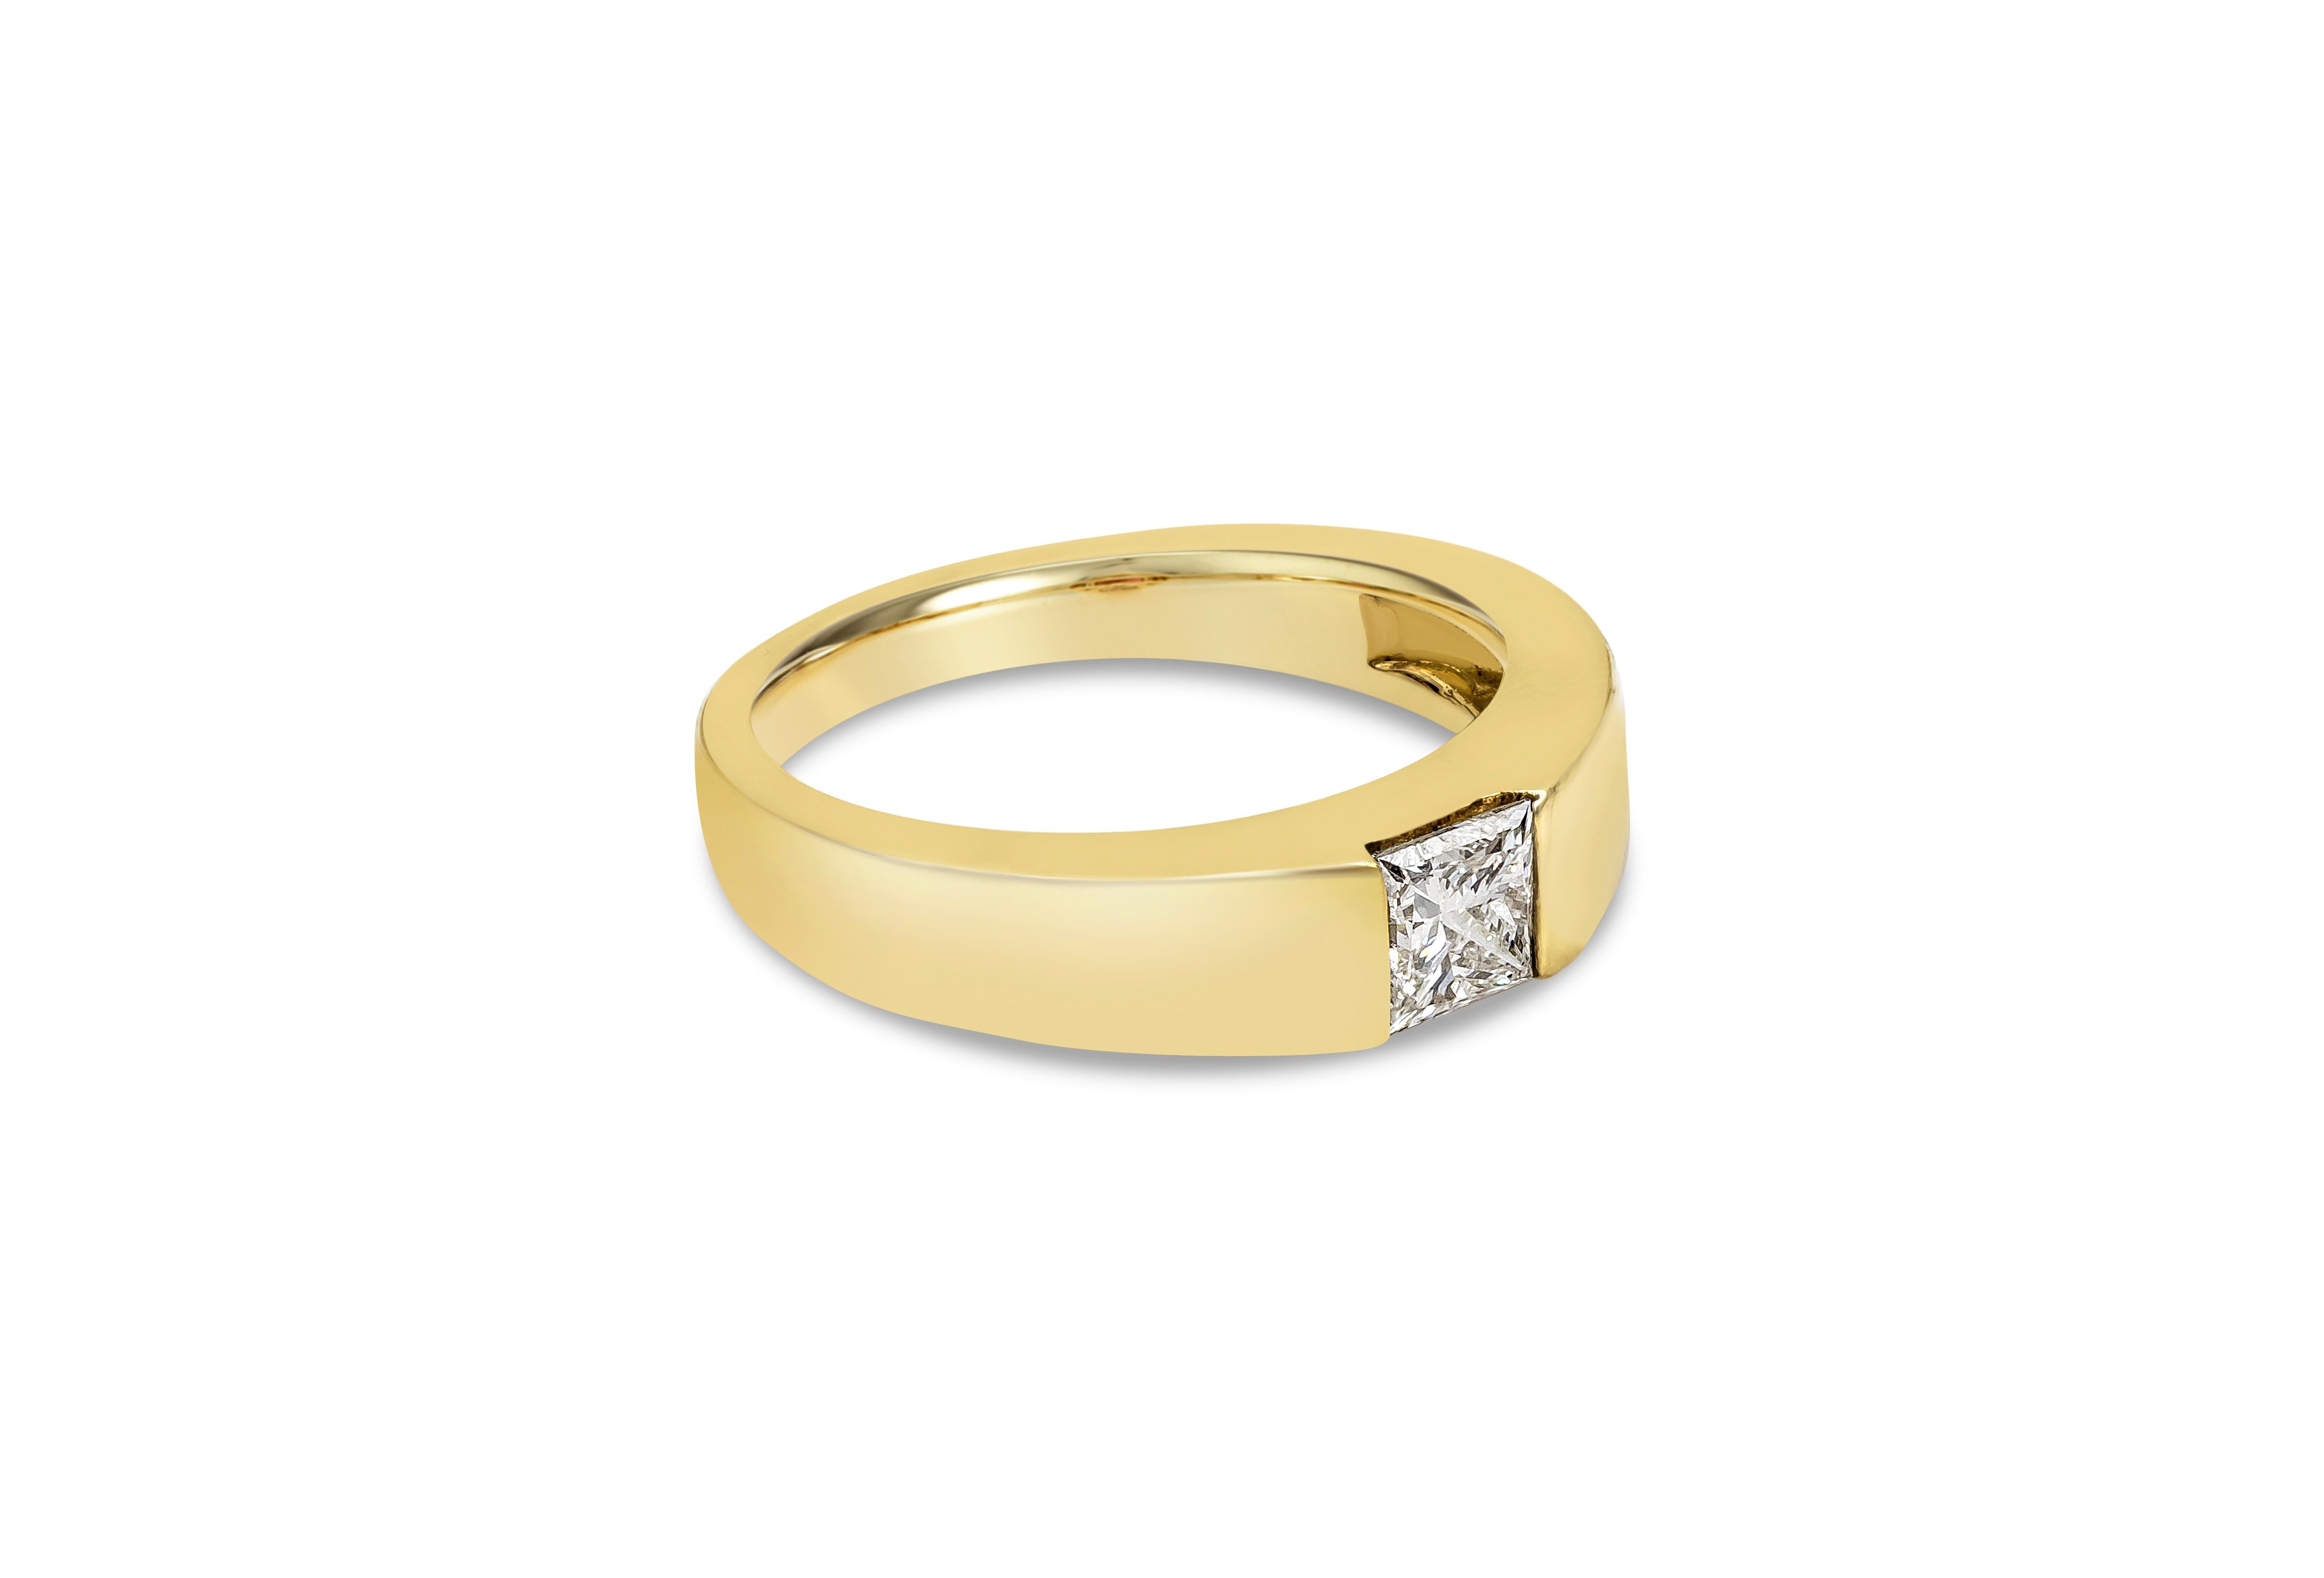 Zeigt einen 0,70-Karat-Diamanten im Prinzess-Schliff, zertifiziert von GIA als Farbe I, Reinheit VS2, gefasst in einer Halbkugel-Fassung. Fein gemacht in 14K Gelbgold und Größe 8,25 US auf Anfrage größenverstellbar.

Roman Malakov ist ein